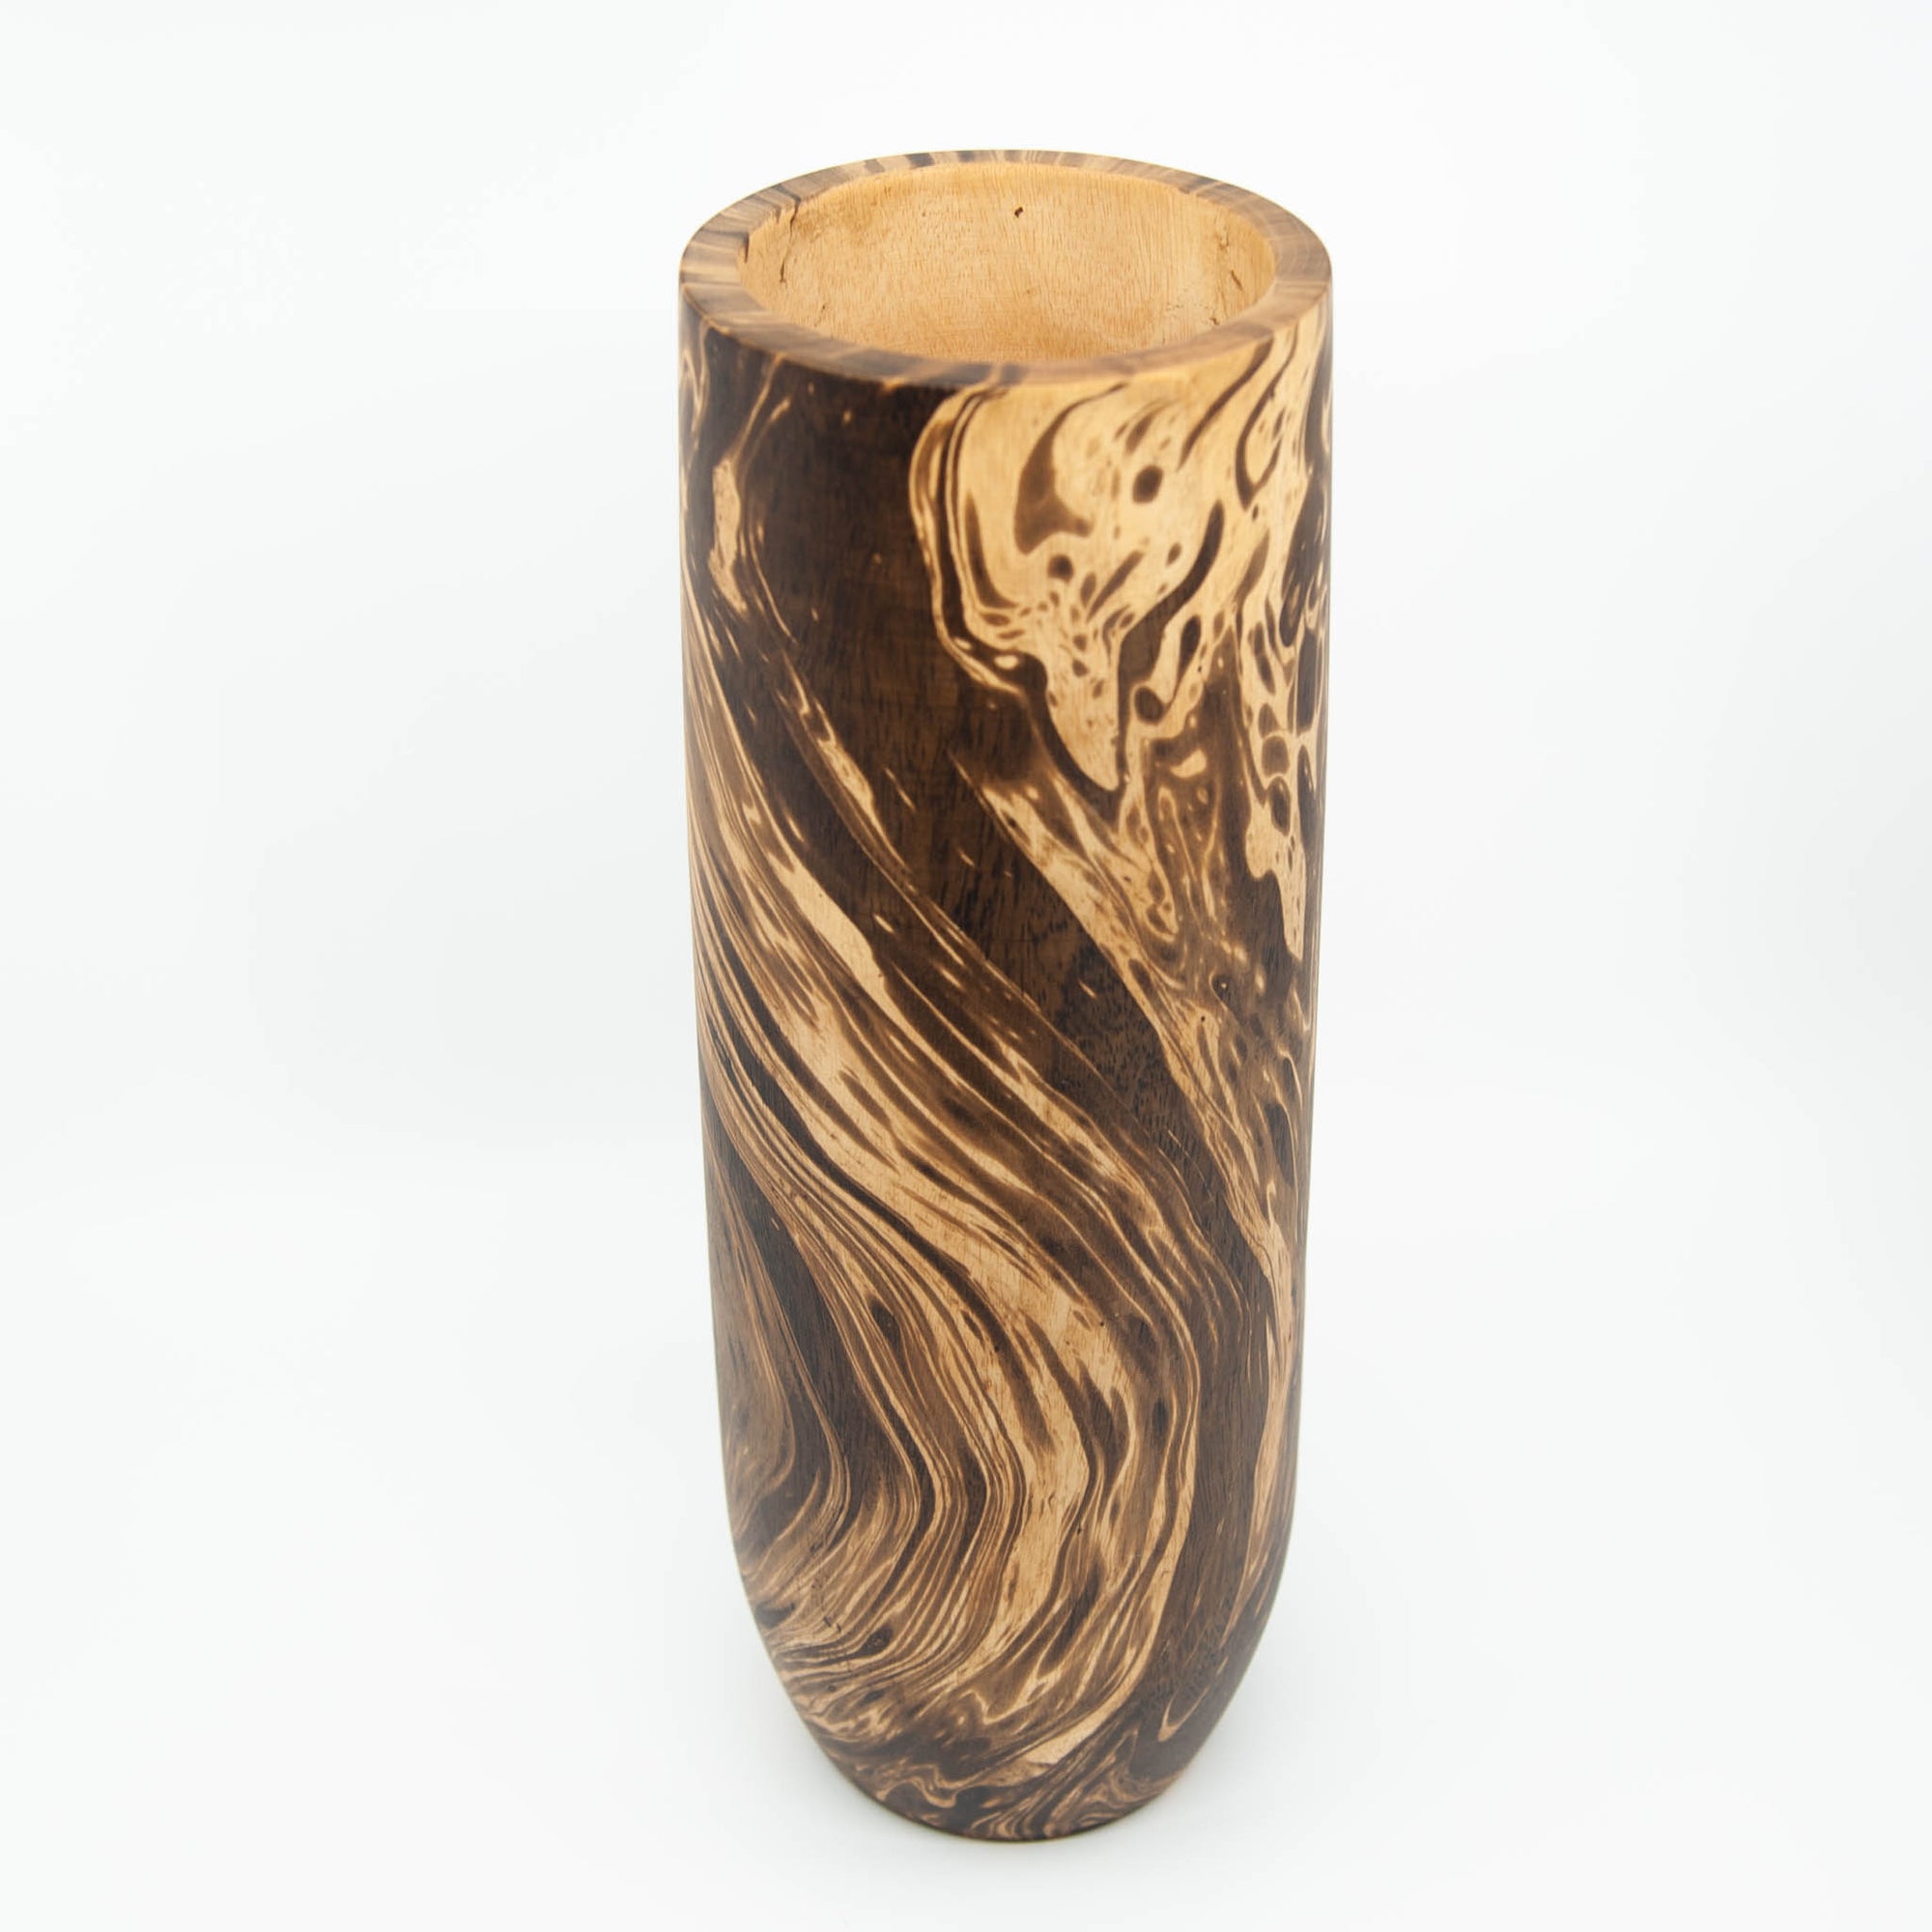 Mango Wood Smooth Cylinder Vase- 14" (Old Wood)